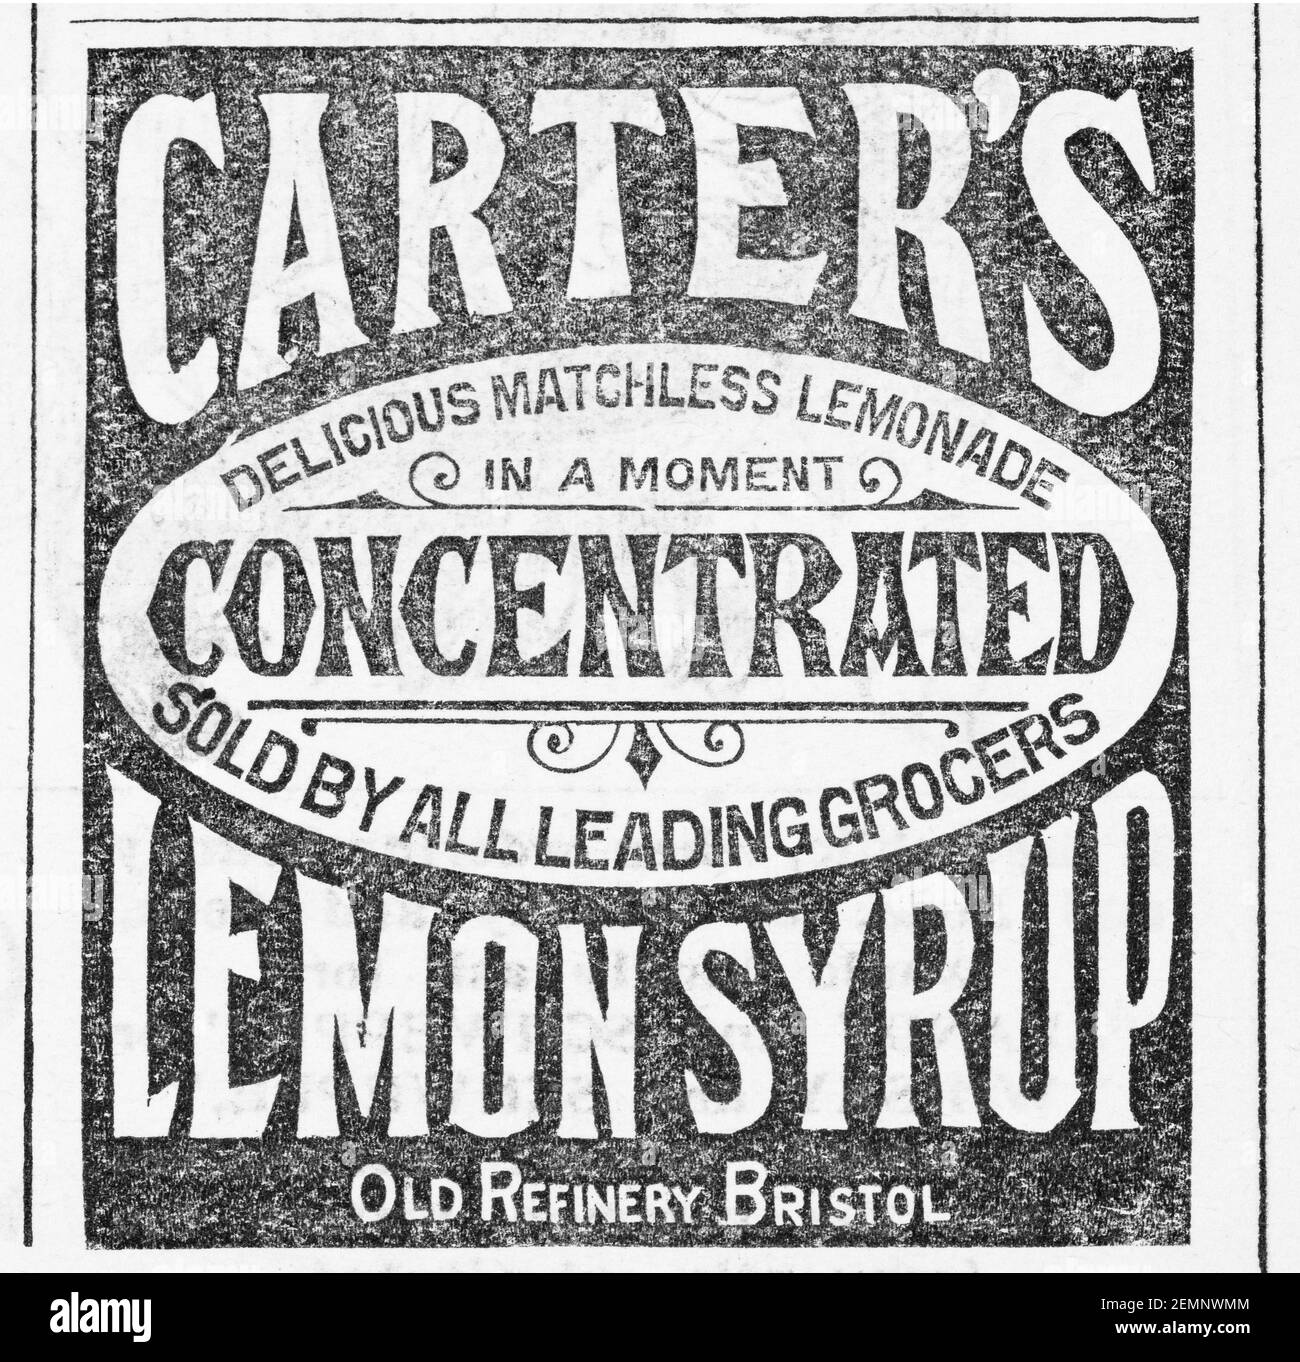 Vecchia rivista vittoriana carta da giornale carter's sciroppo di limone spot alimentare dal 1897 - prima dell'alba degli standard pubblicitari. Storia della pubblicità. Foto Stock